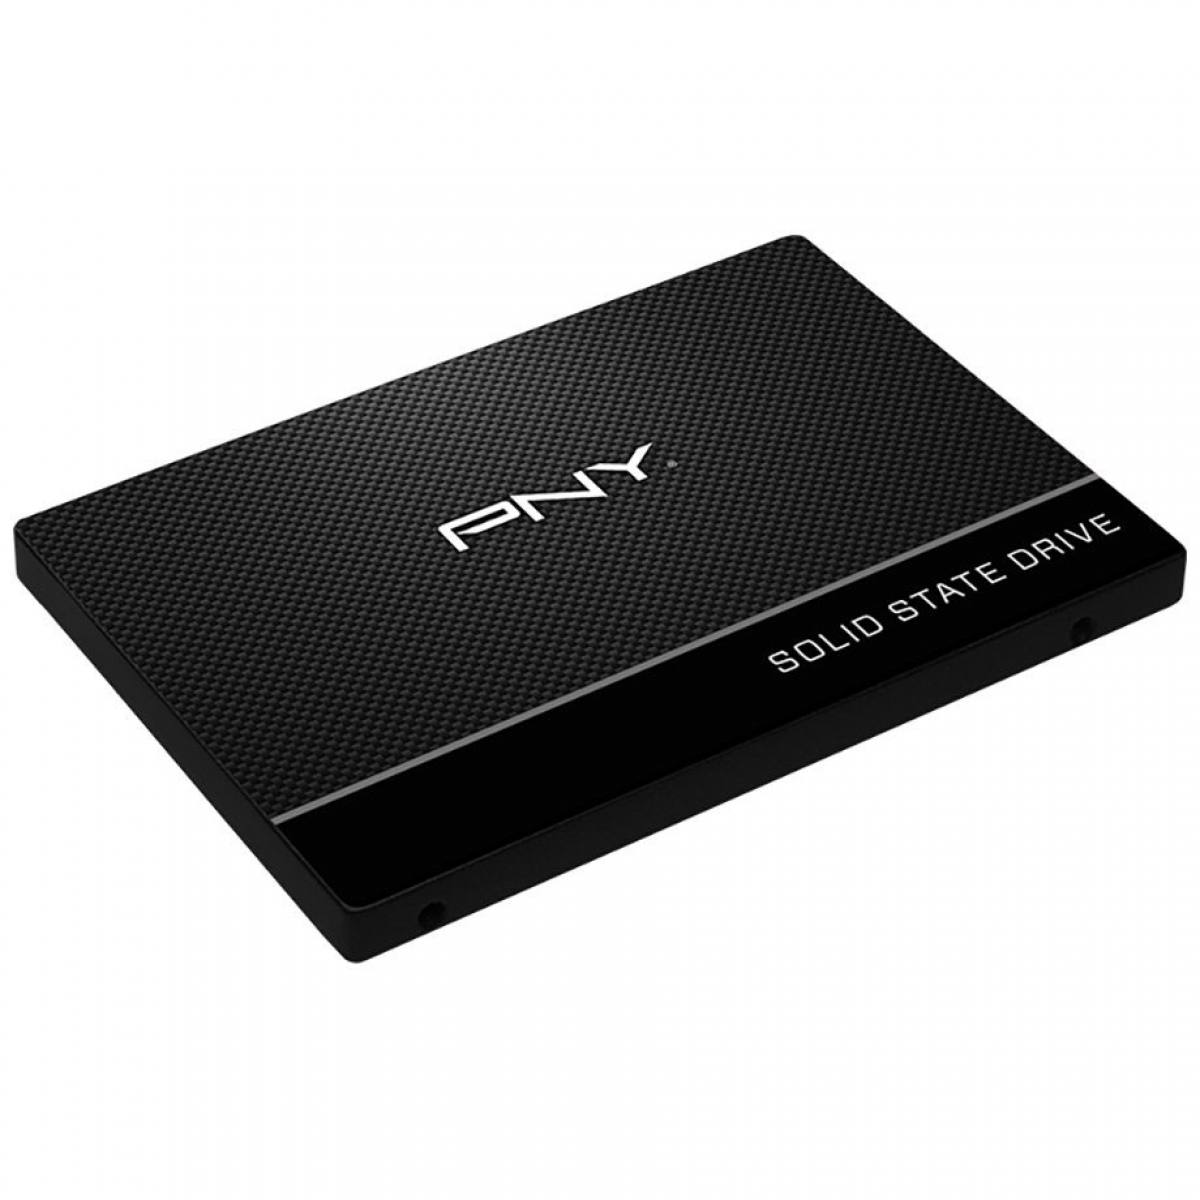 SSD PNY CS900 2.5inch 120GB TLC 